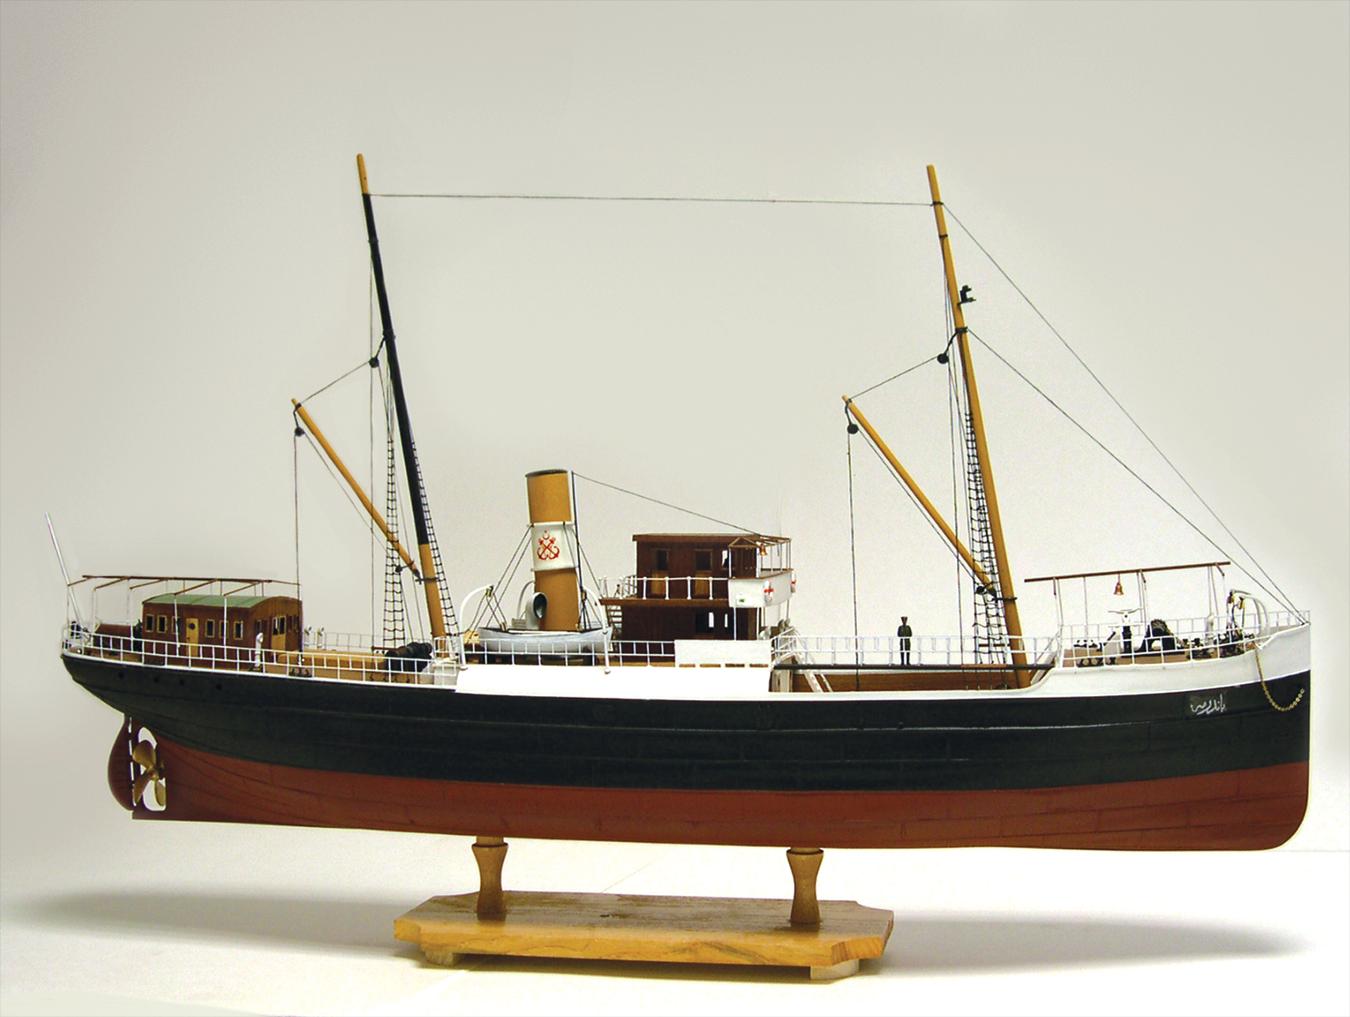 heller soleil royal boat model building kit - buy online